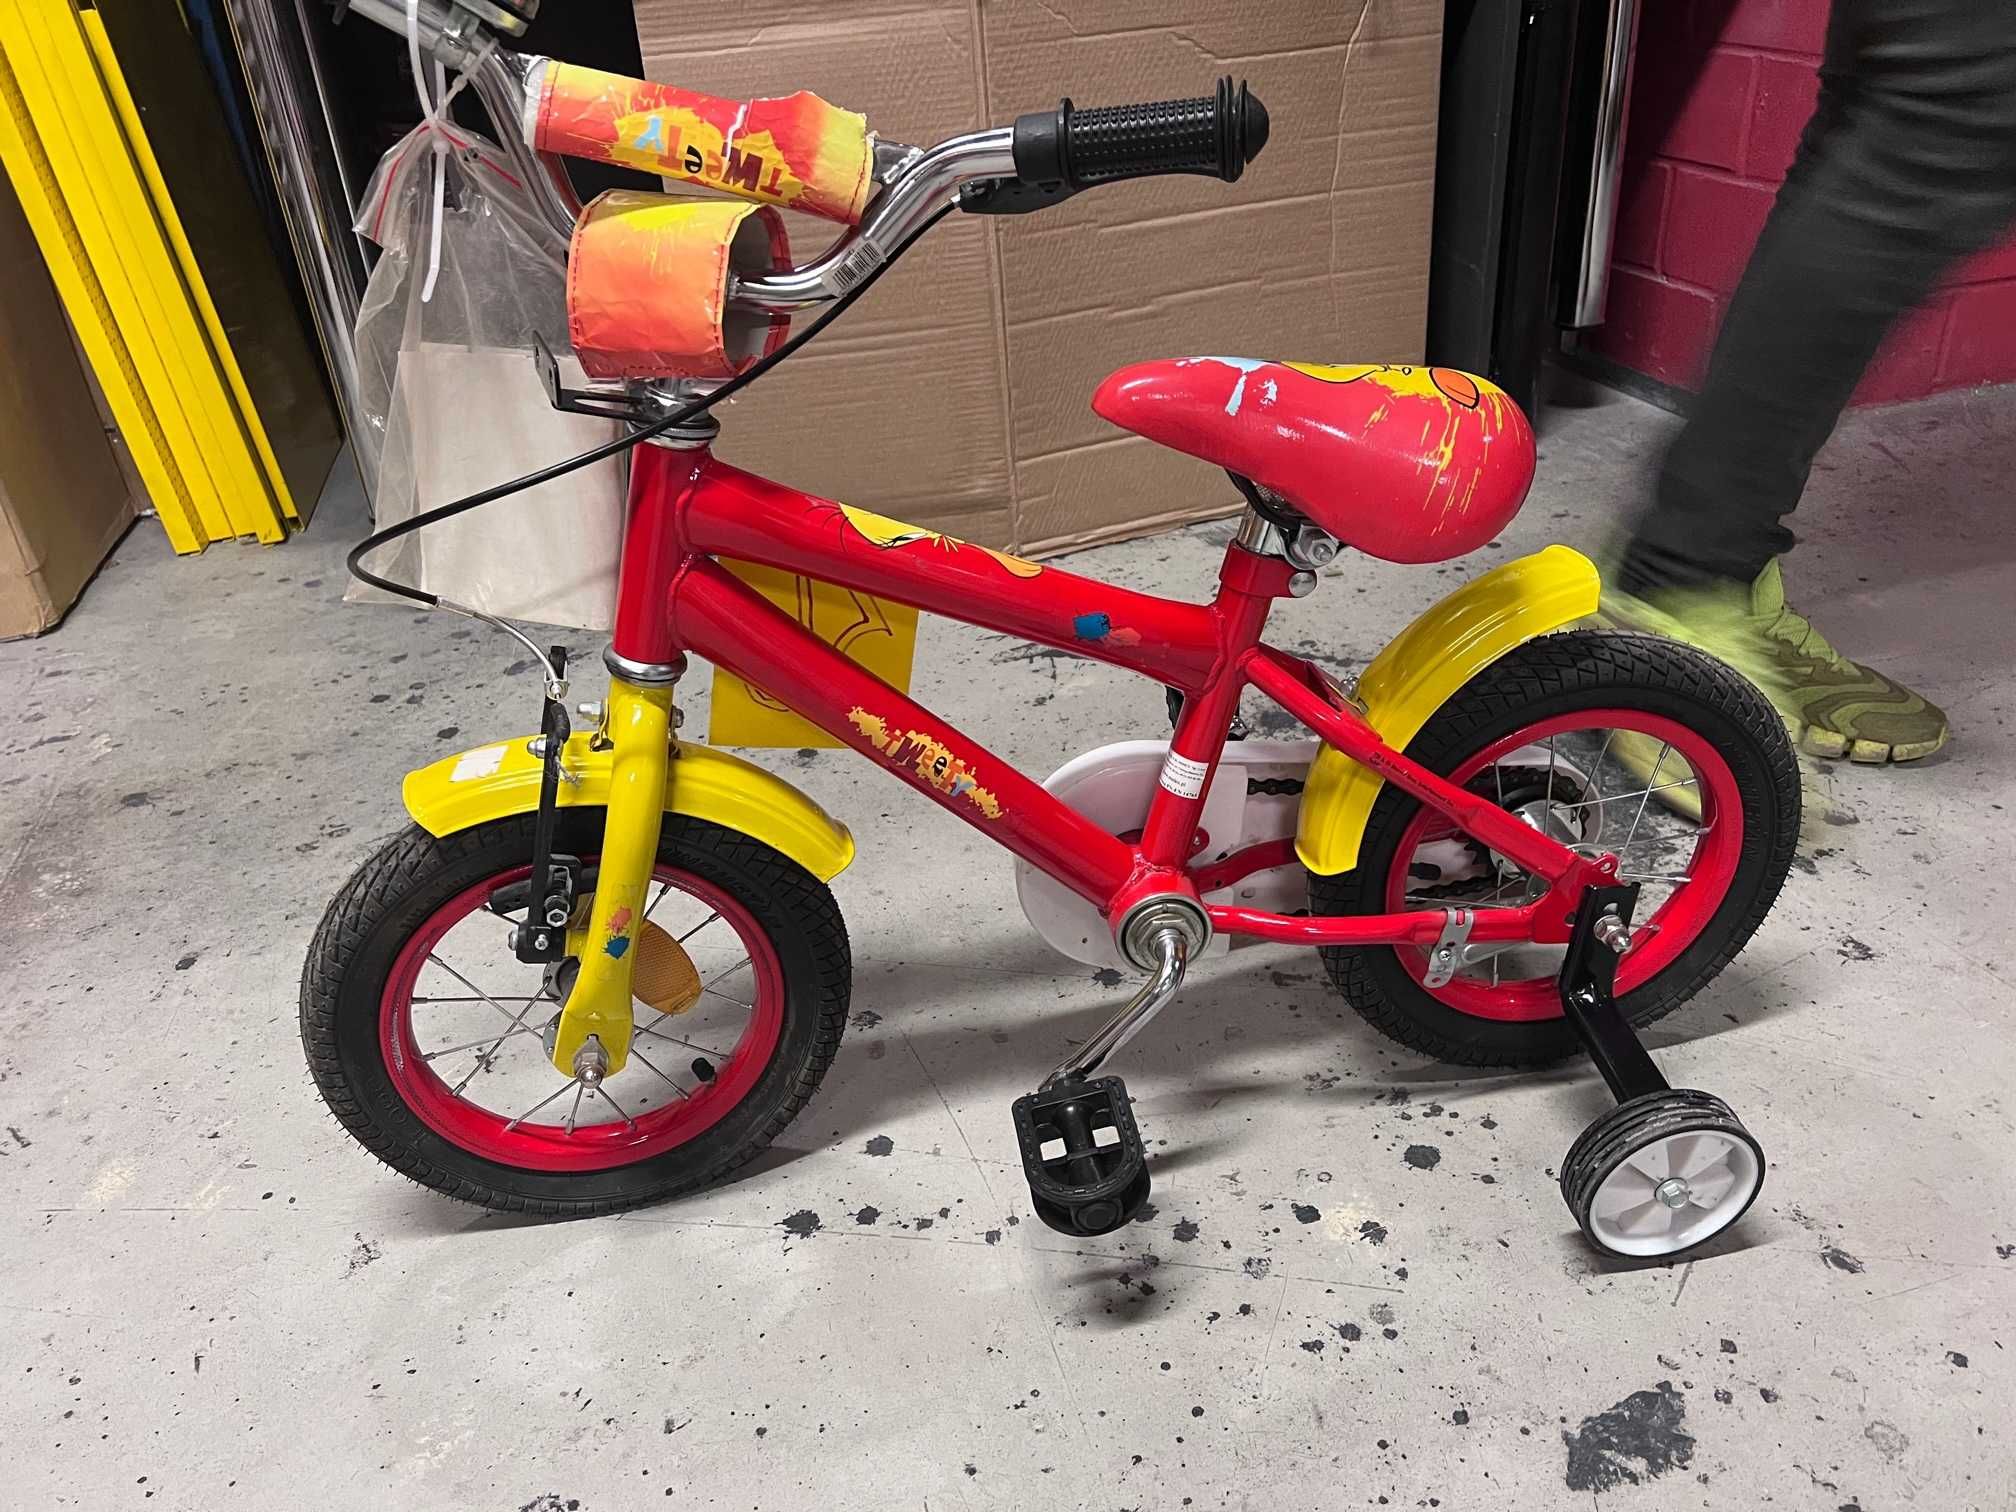 Rower rowerek dla dzieci 12'' nowy  ( 35 )